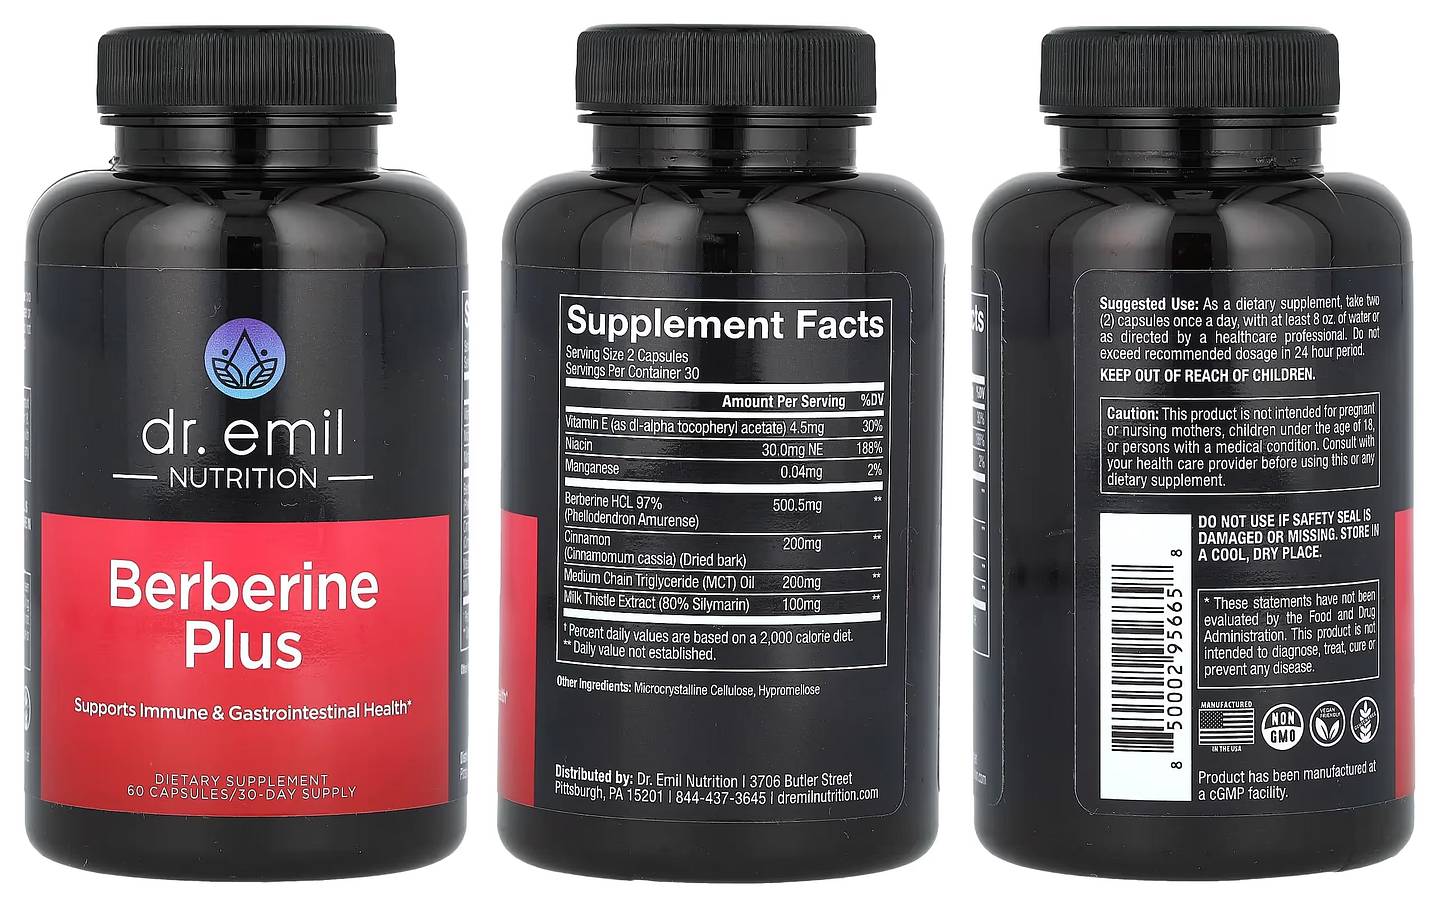 Dr. Emil Nutrition, Berberine Plus packaging